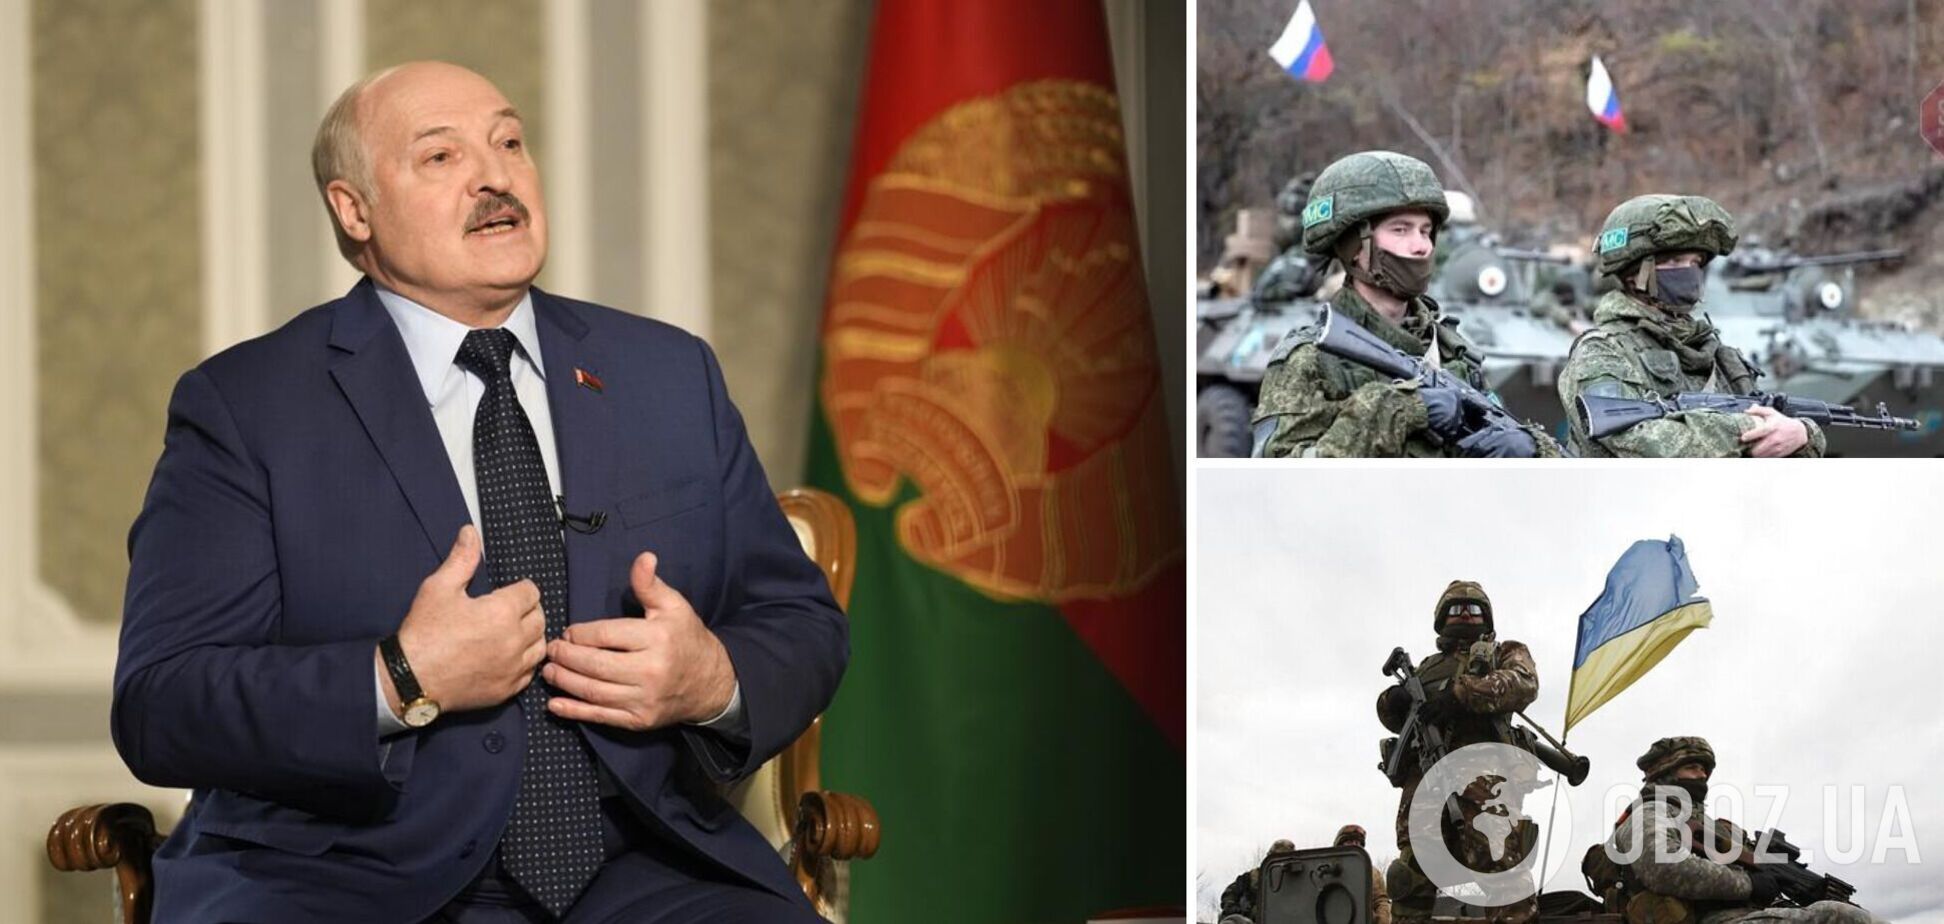 Лукашенко 'намекнул' на провал планов Путина по войне против Украины и приписал себе роль 'миротворца'